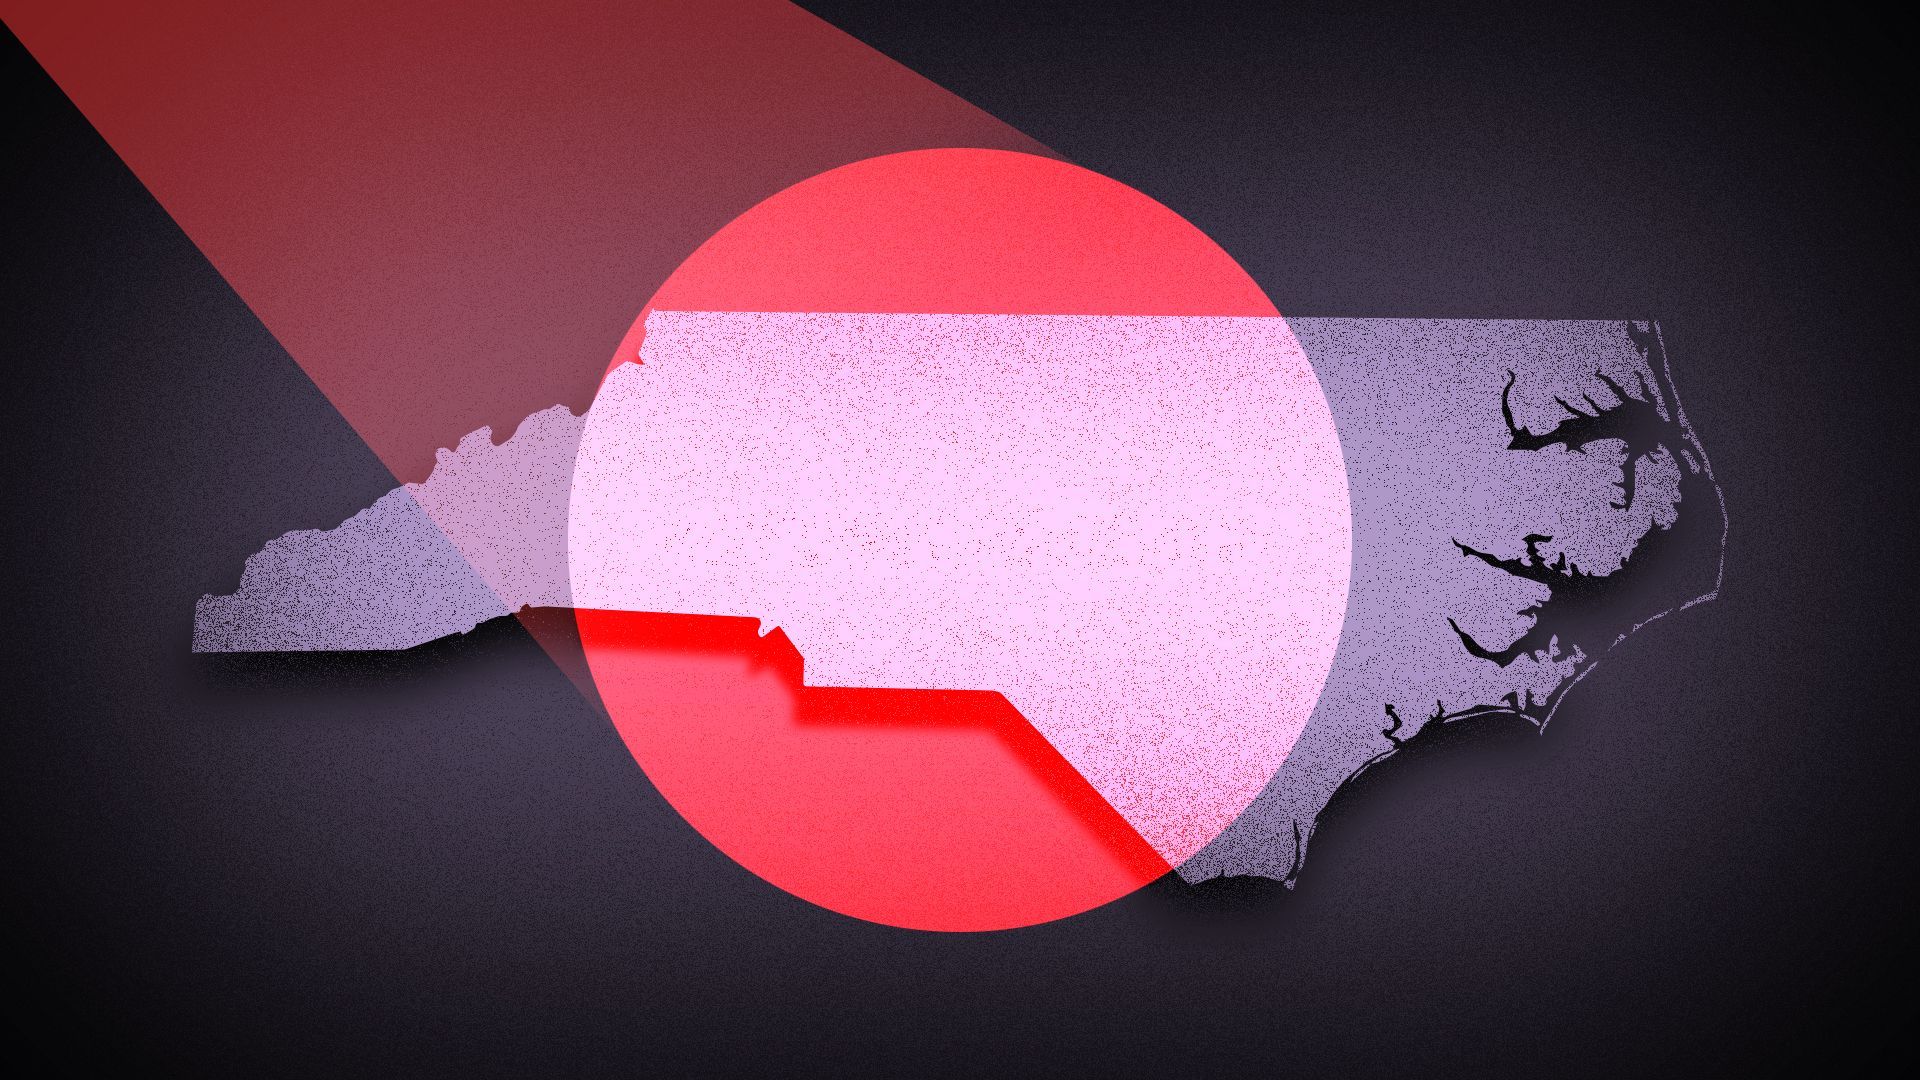 Illustration of North Carolina under a red spotlight. 